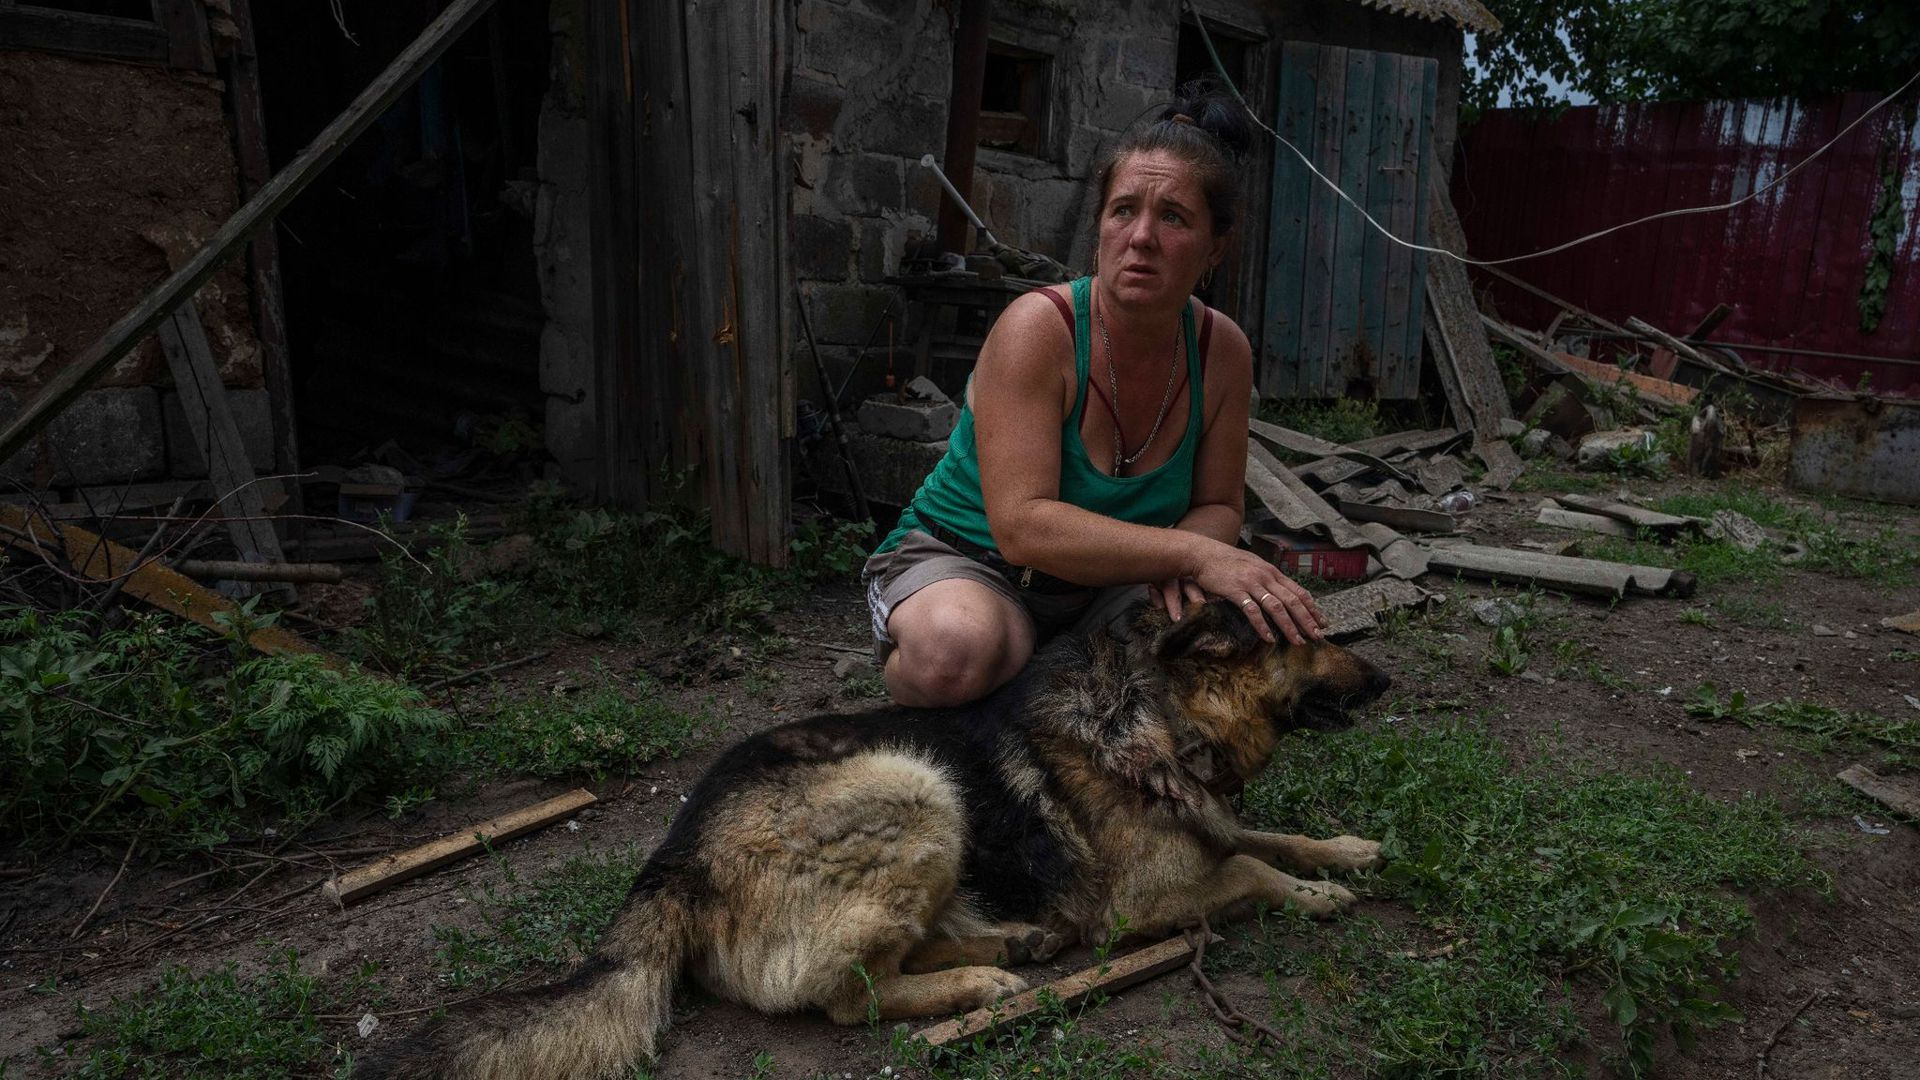 Nch einem Raketenangriff am Stadtrand von Pokrowsk bedeckt die 43-jährige Tetiana Pashko die Augen ihres verletzten Hundes, als sie laute Geräusche hört.